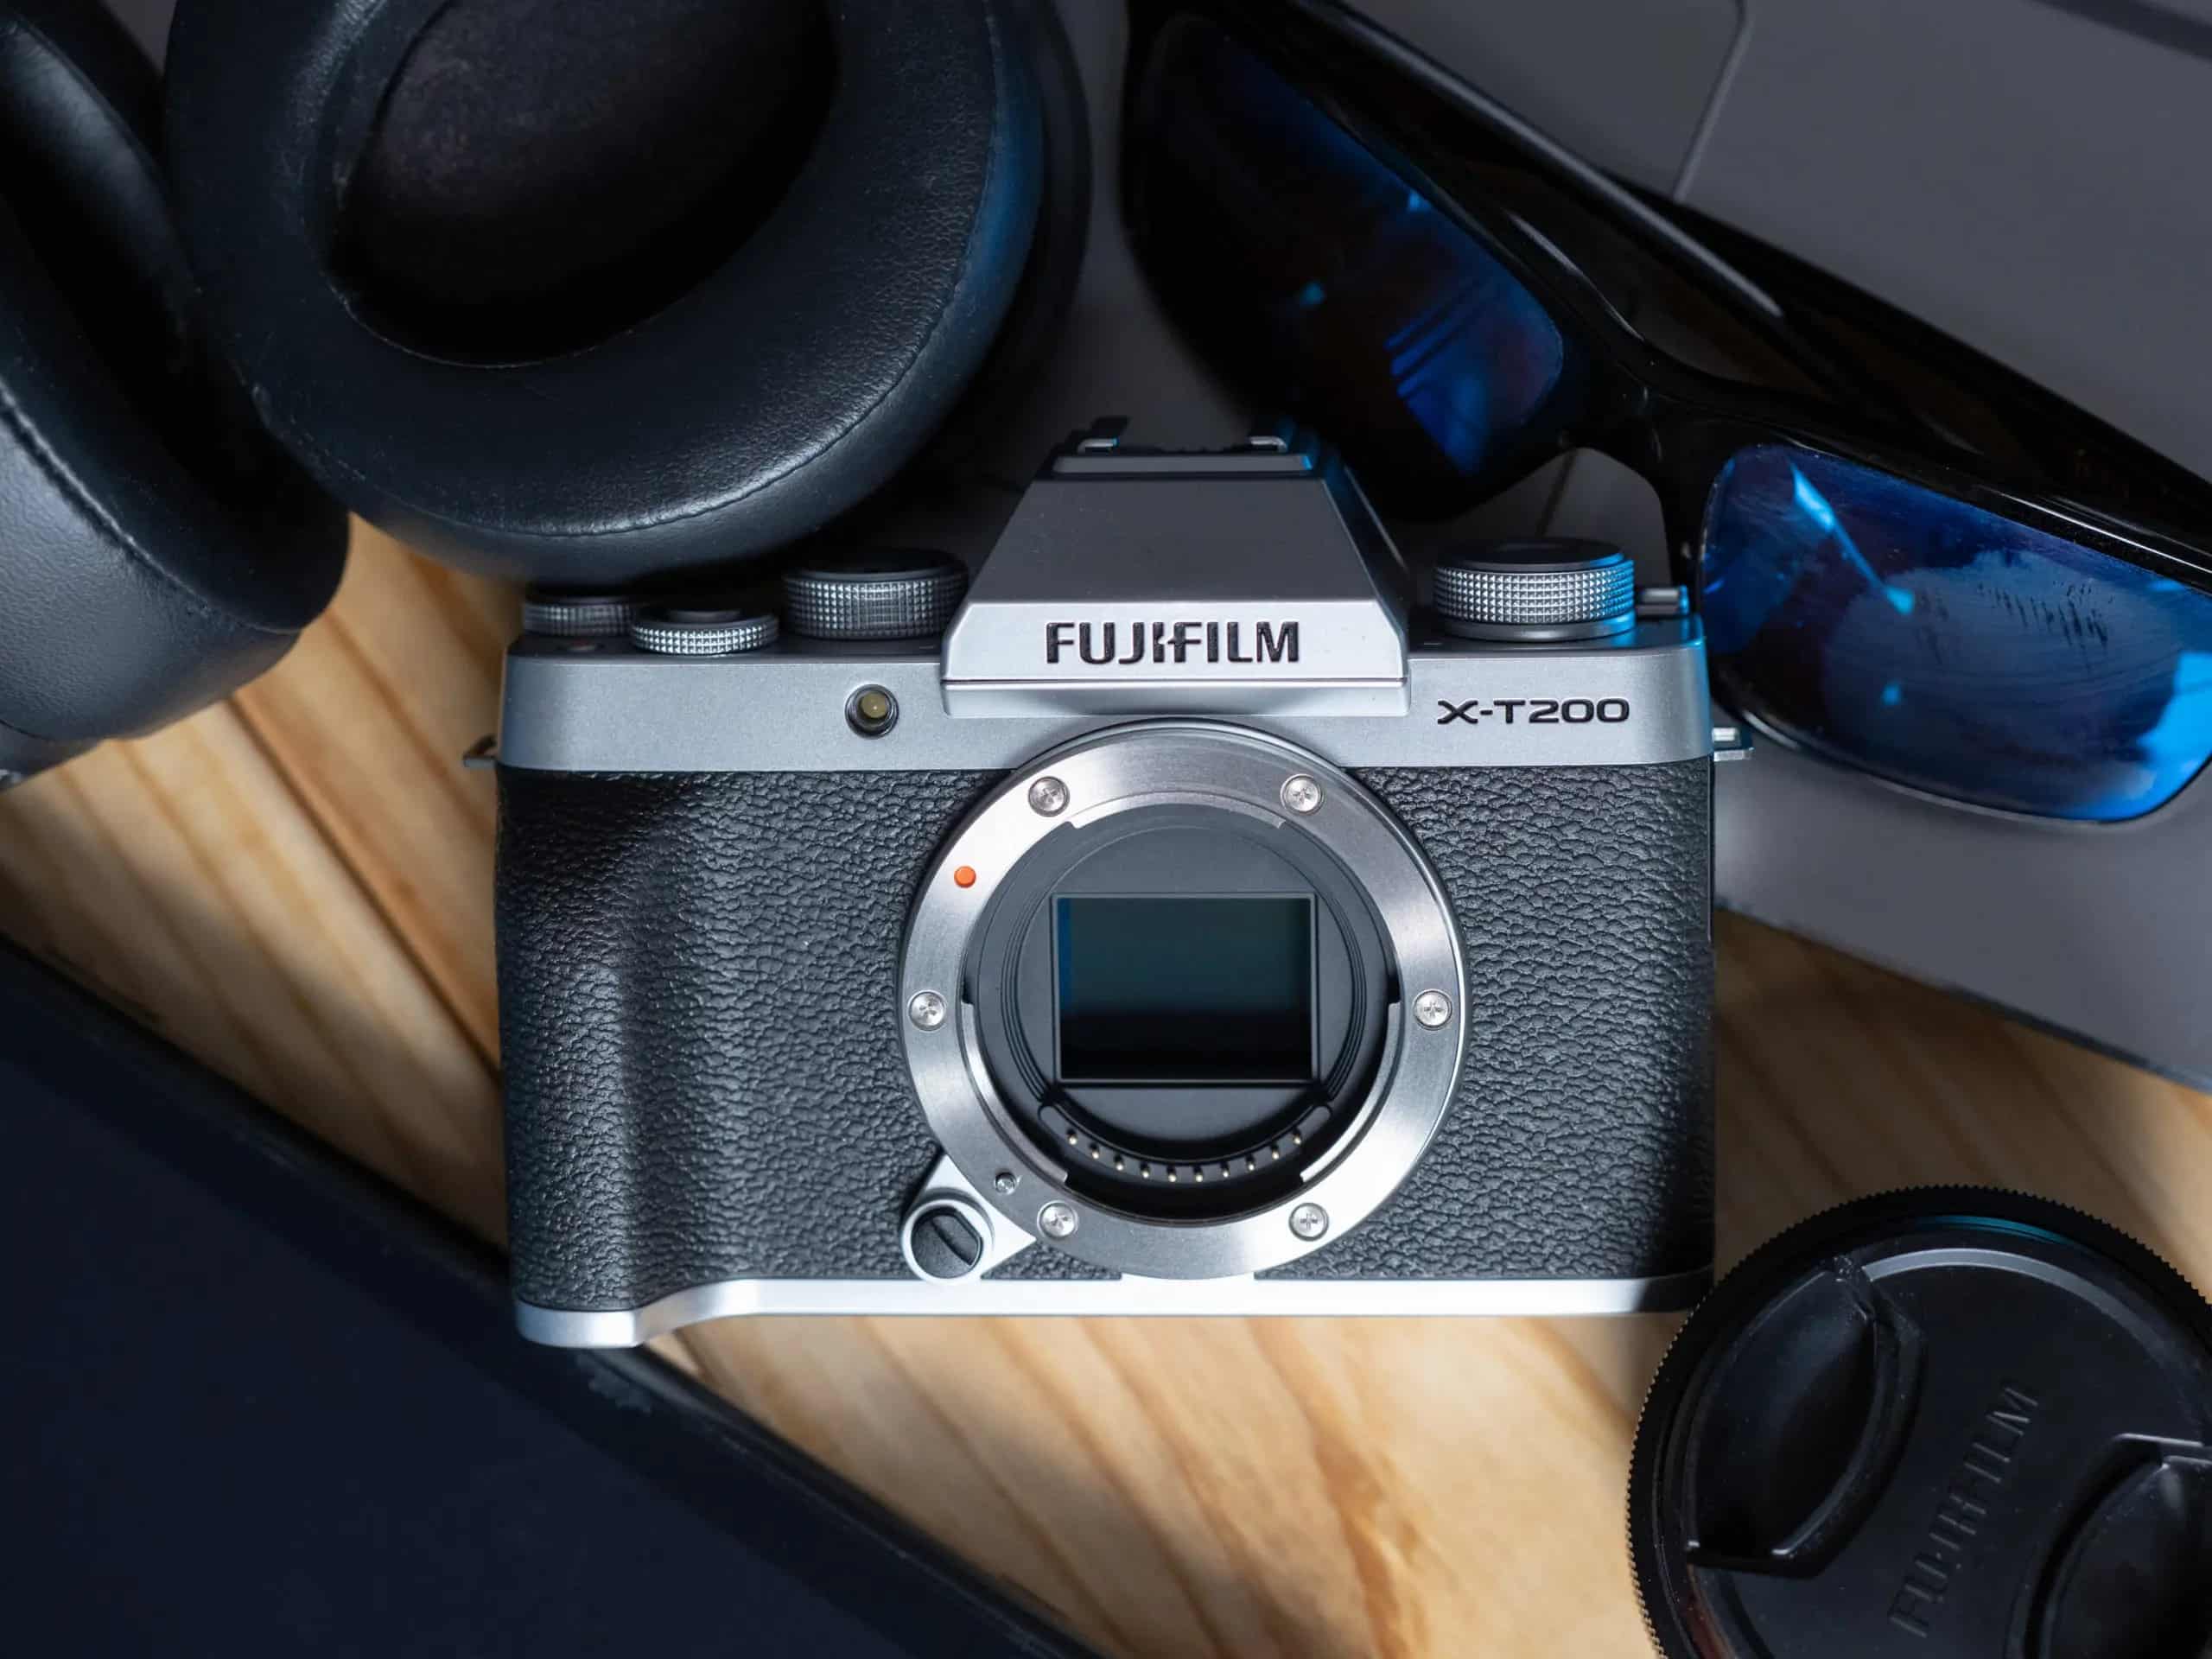 Chưa biết nên chọn máy ảnh Fujifilm nào phù hợp? Đây sẽ là lời khuyên dành cho bạn